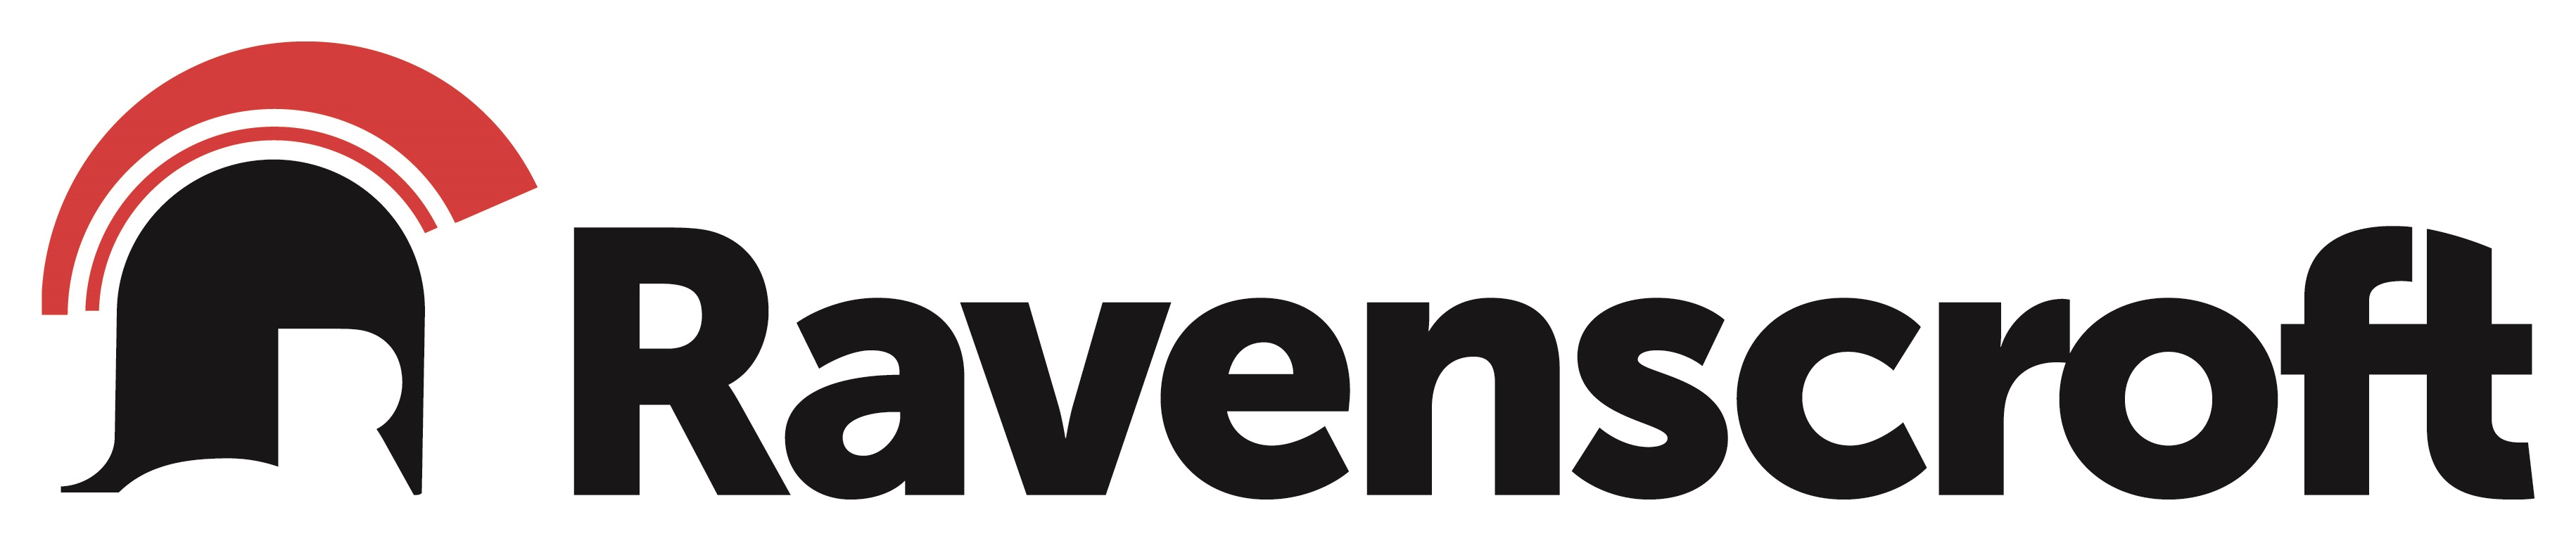 Ravenscroft logo and link